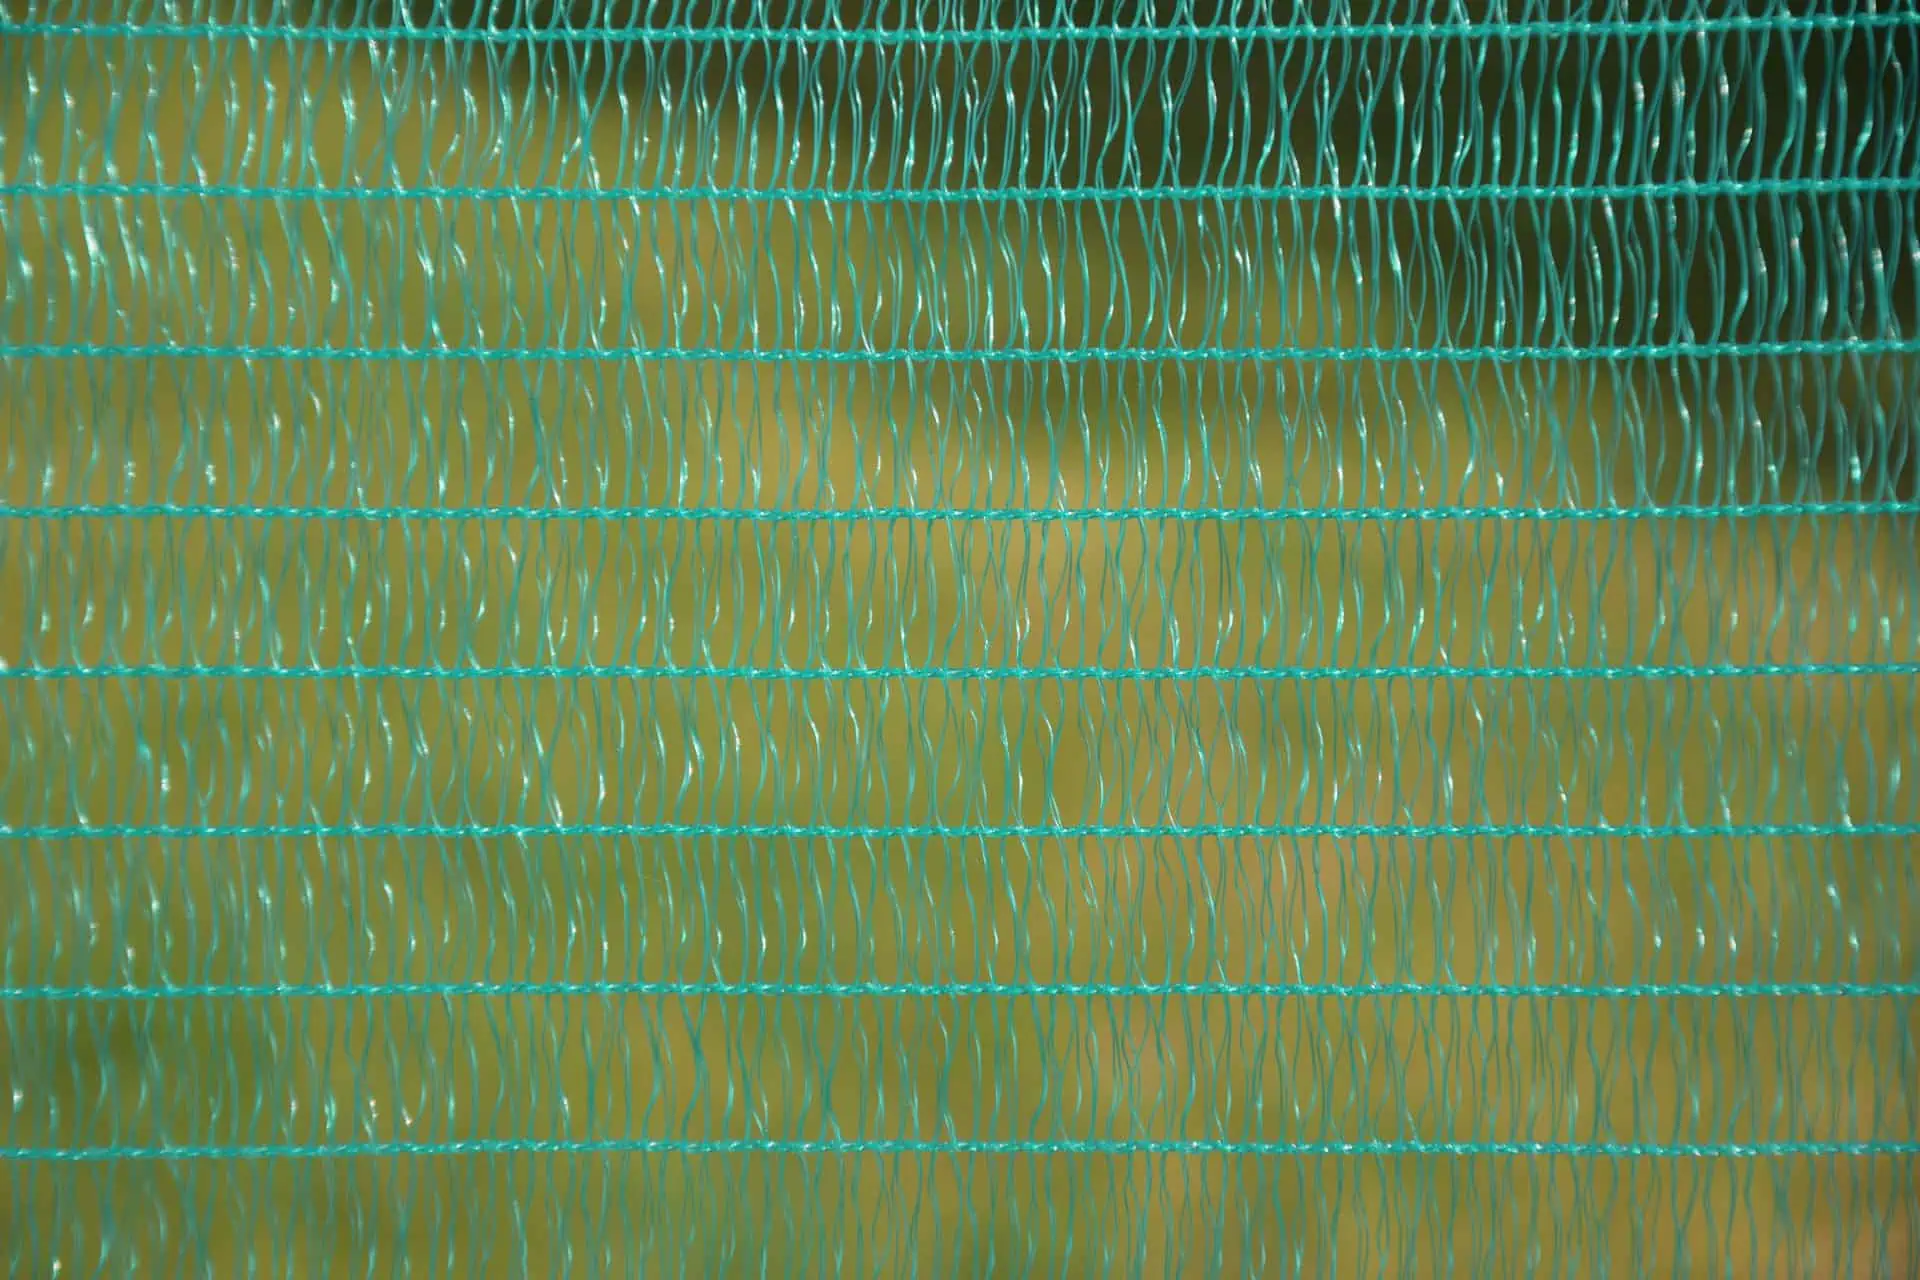 Univerzális kerítés zöld 80cm x 20m